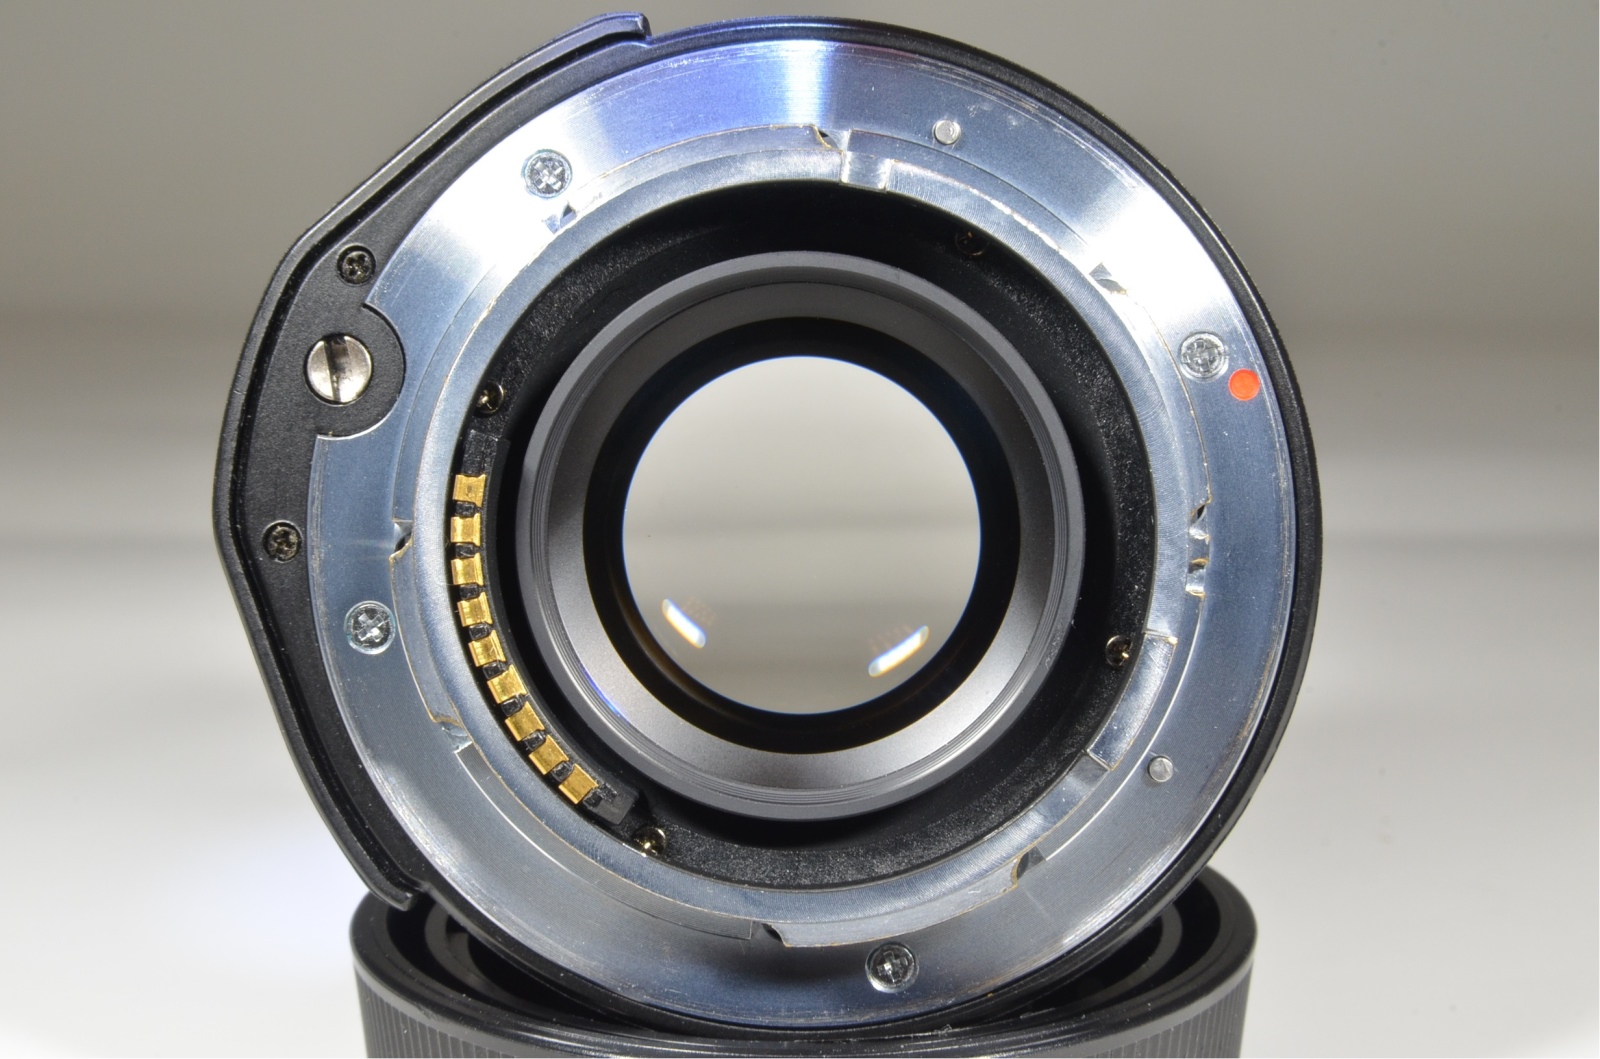 contax g2 camera / planar 45mm f2 / biogon 28 f2.8 / sonnar 90mm f2.8